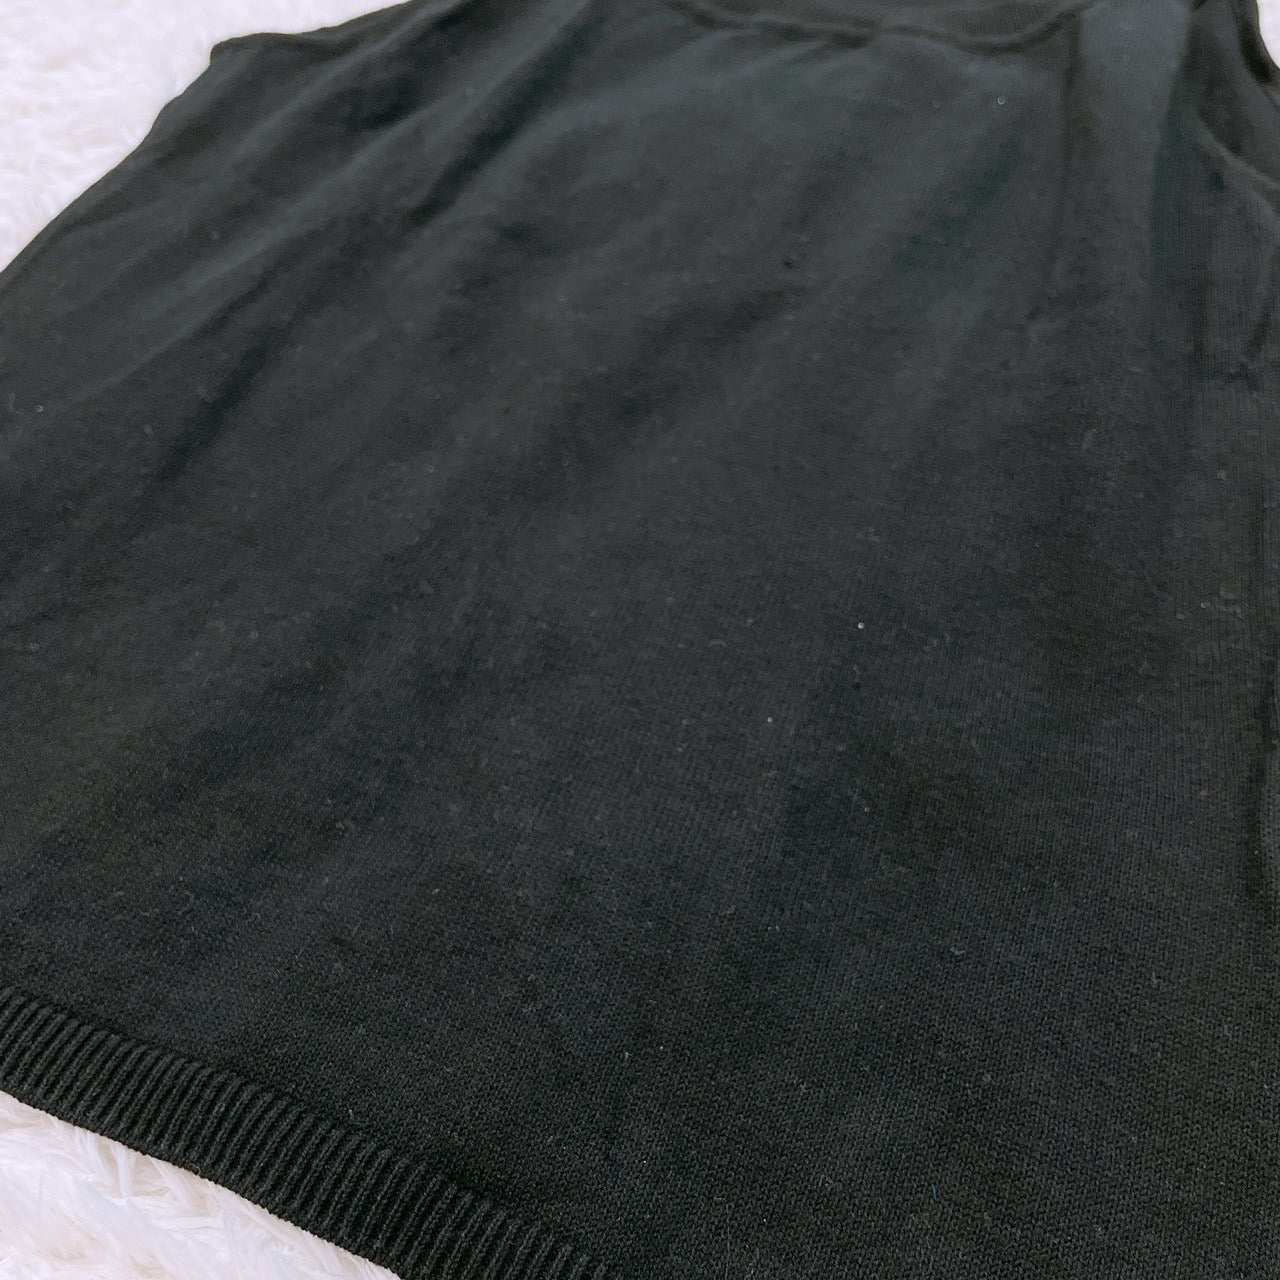 【25594】 Harrods ハロッズ タンクトップ ブラック サイズS相当 シャツ インナーシャツ ホルターネック風 シンプル 日本製 レディース